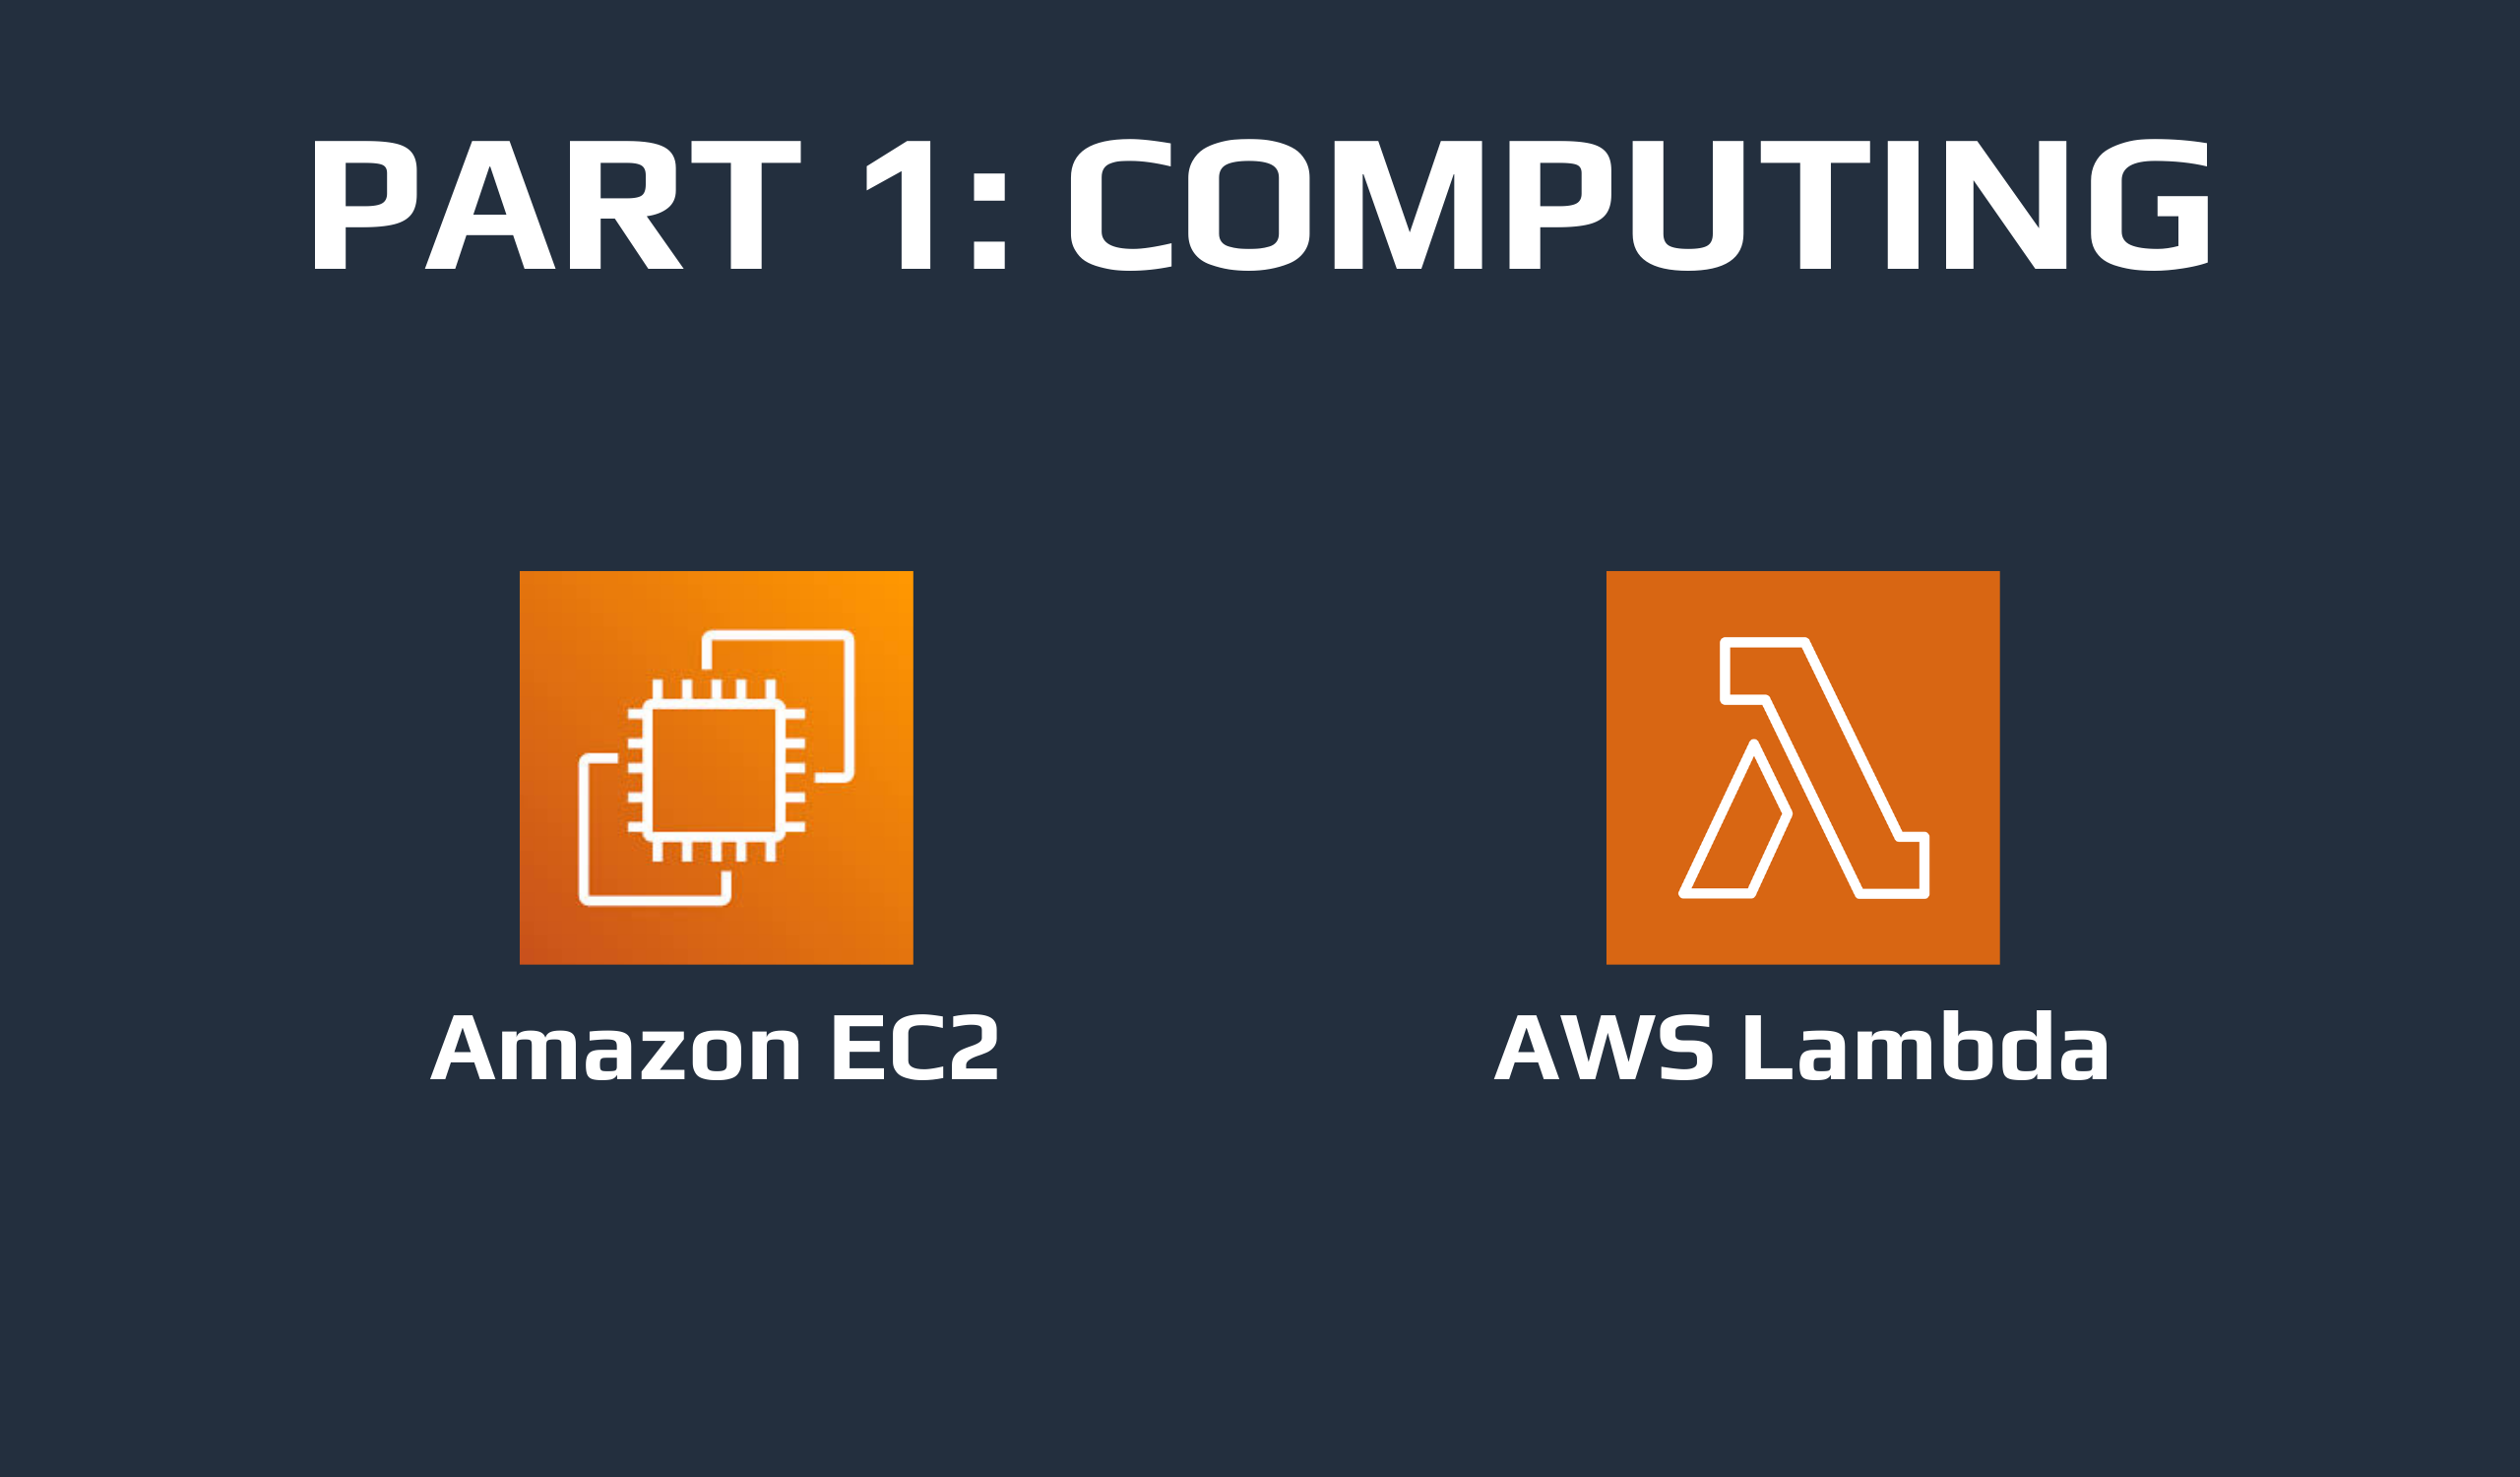 Amazon EC2 and AWS Lambda